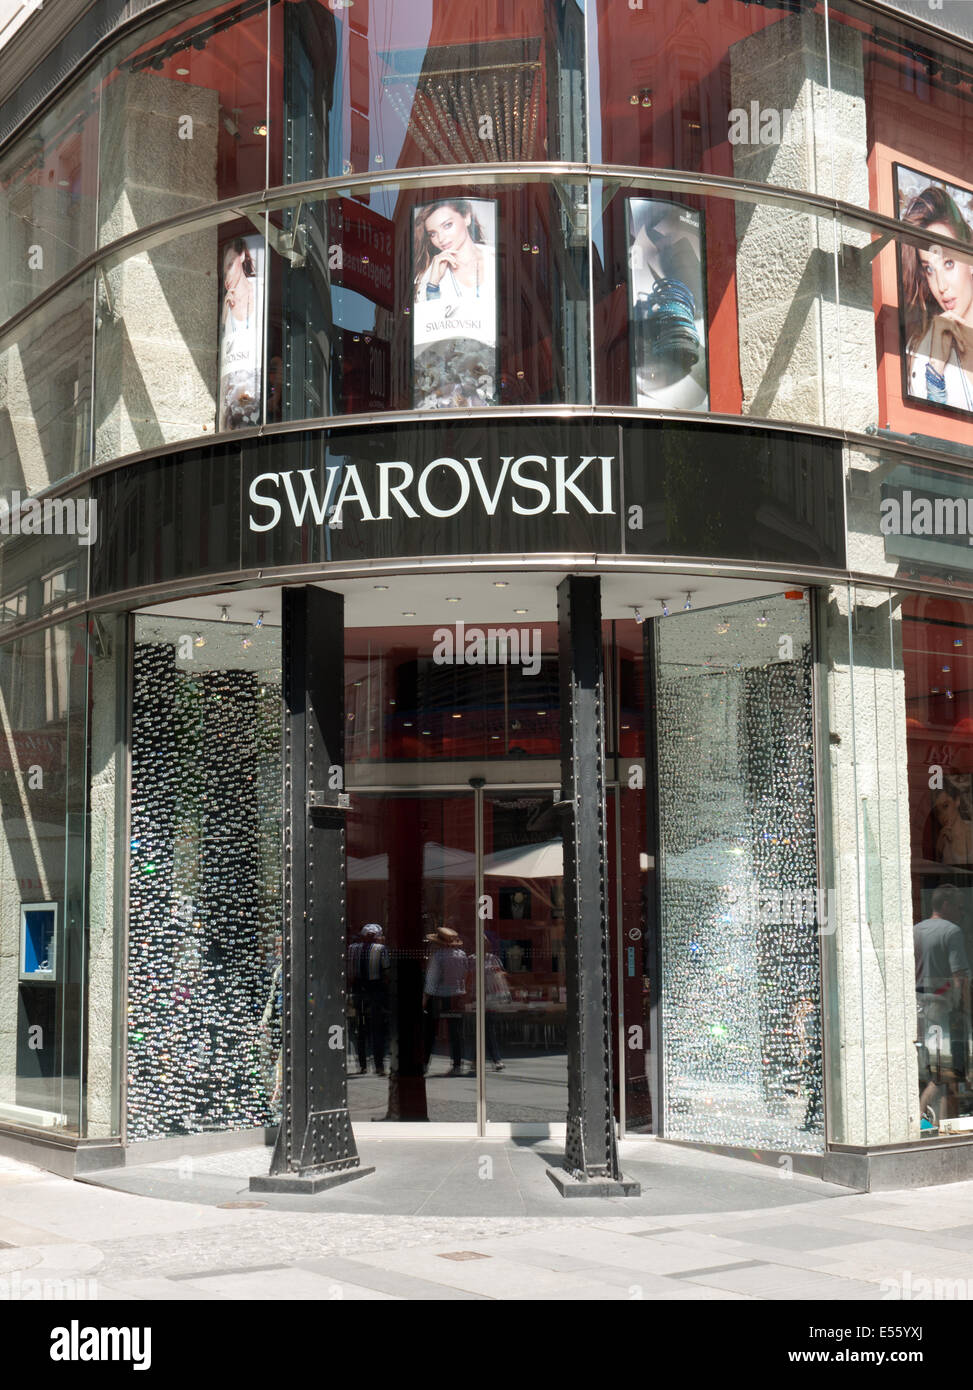 Industrieel Pakistan weefgetouw Swarovski shop in Vienna, Austria Stock Photo - Alamy